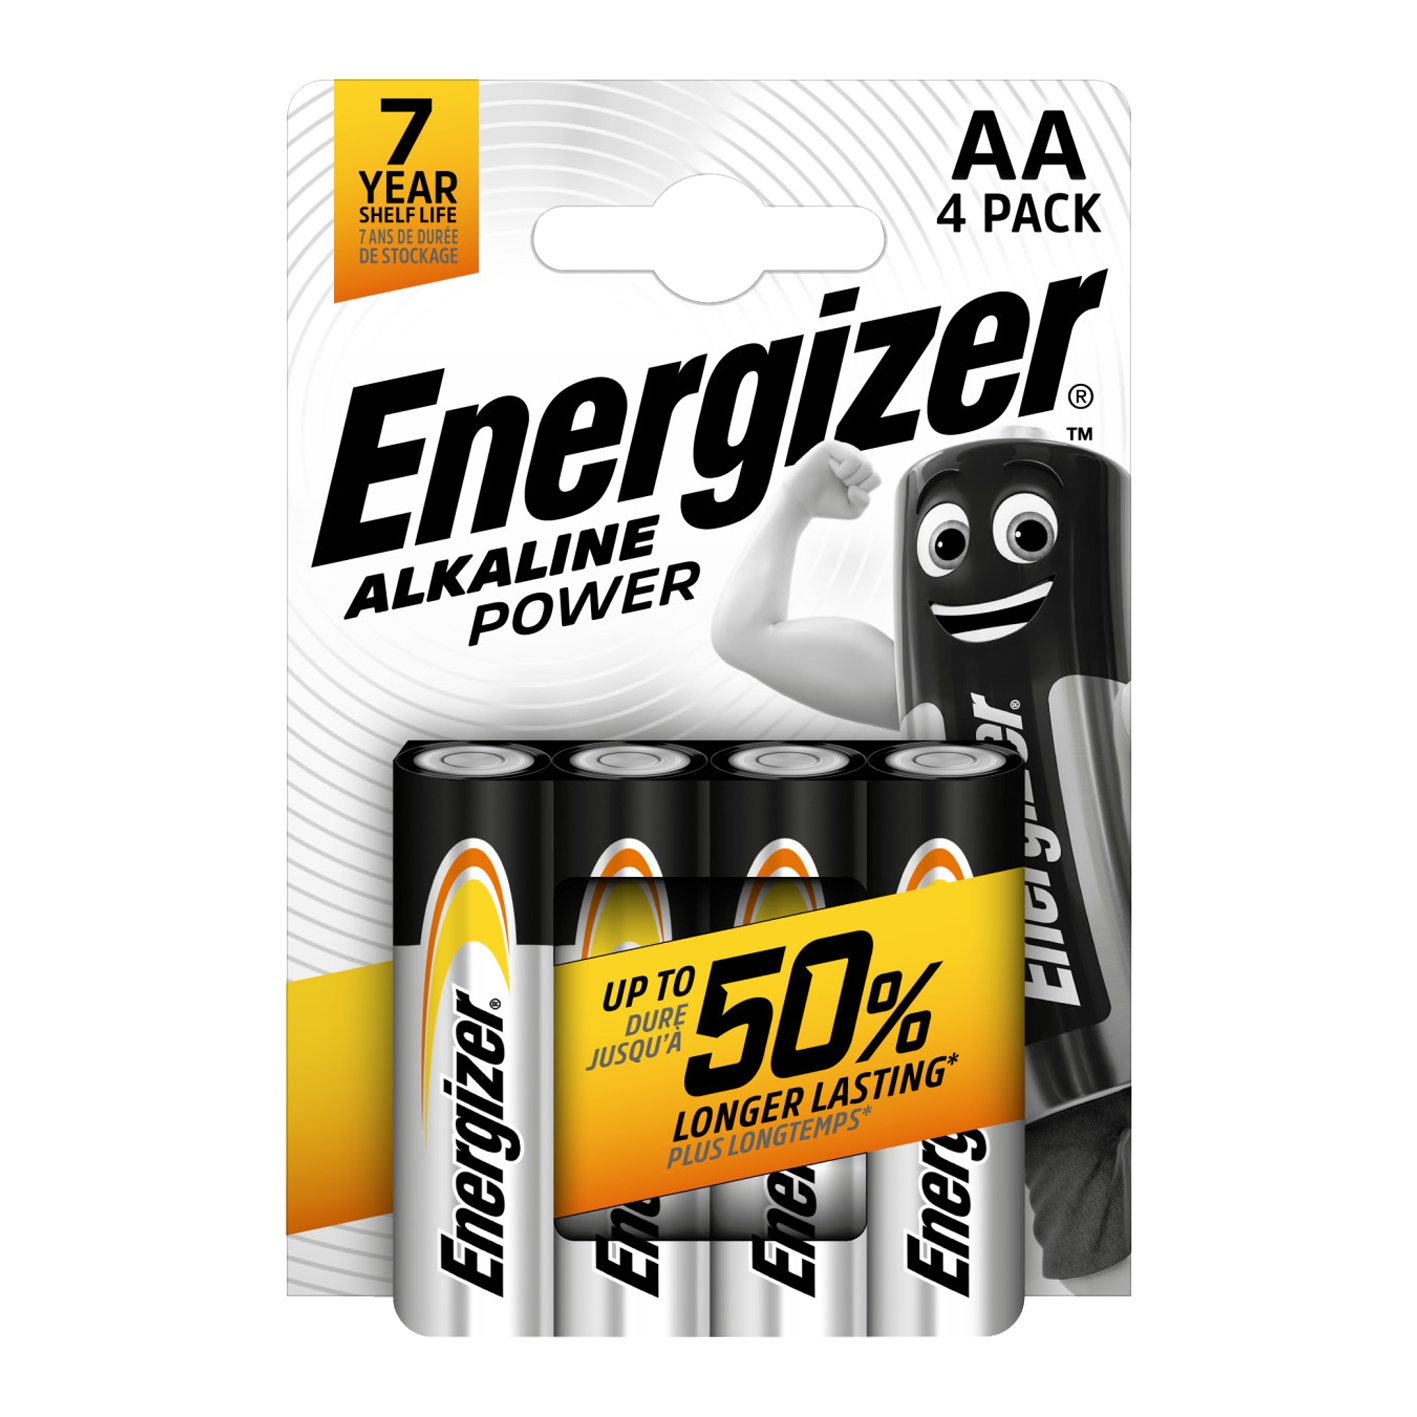 Energizer AA alcalino Power, paquete de 4